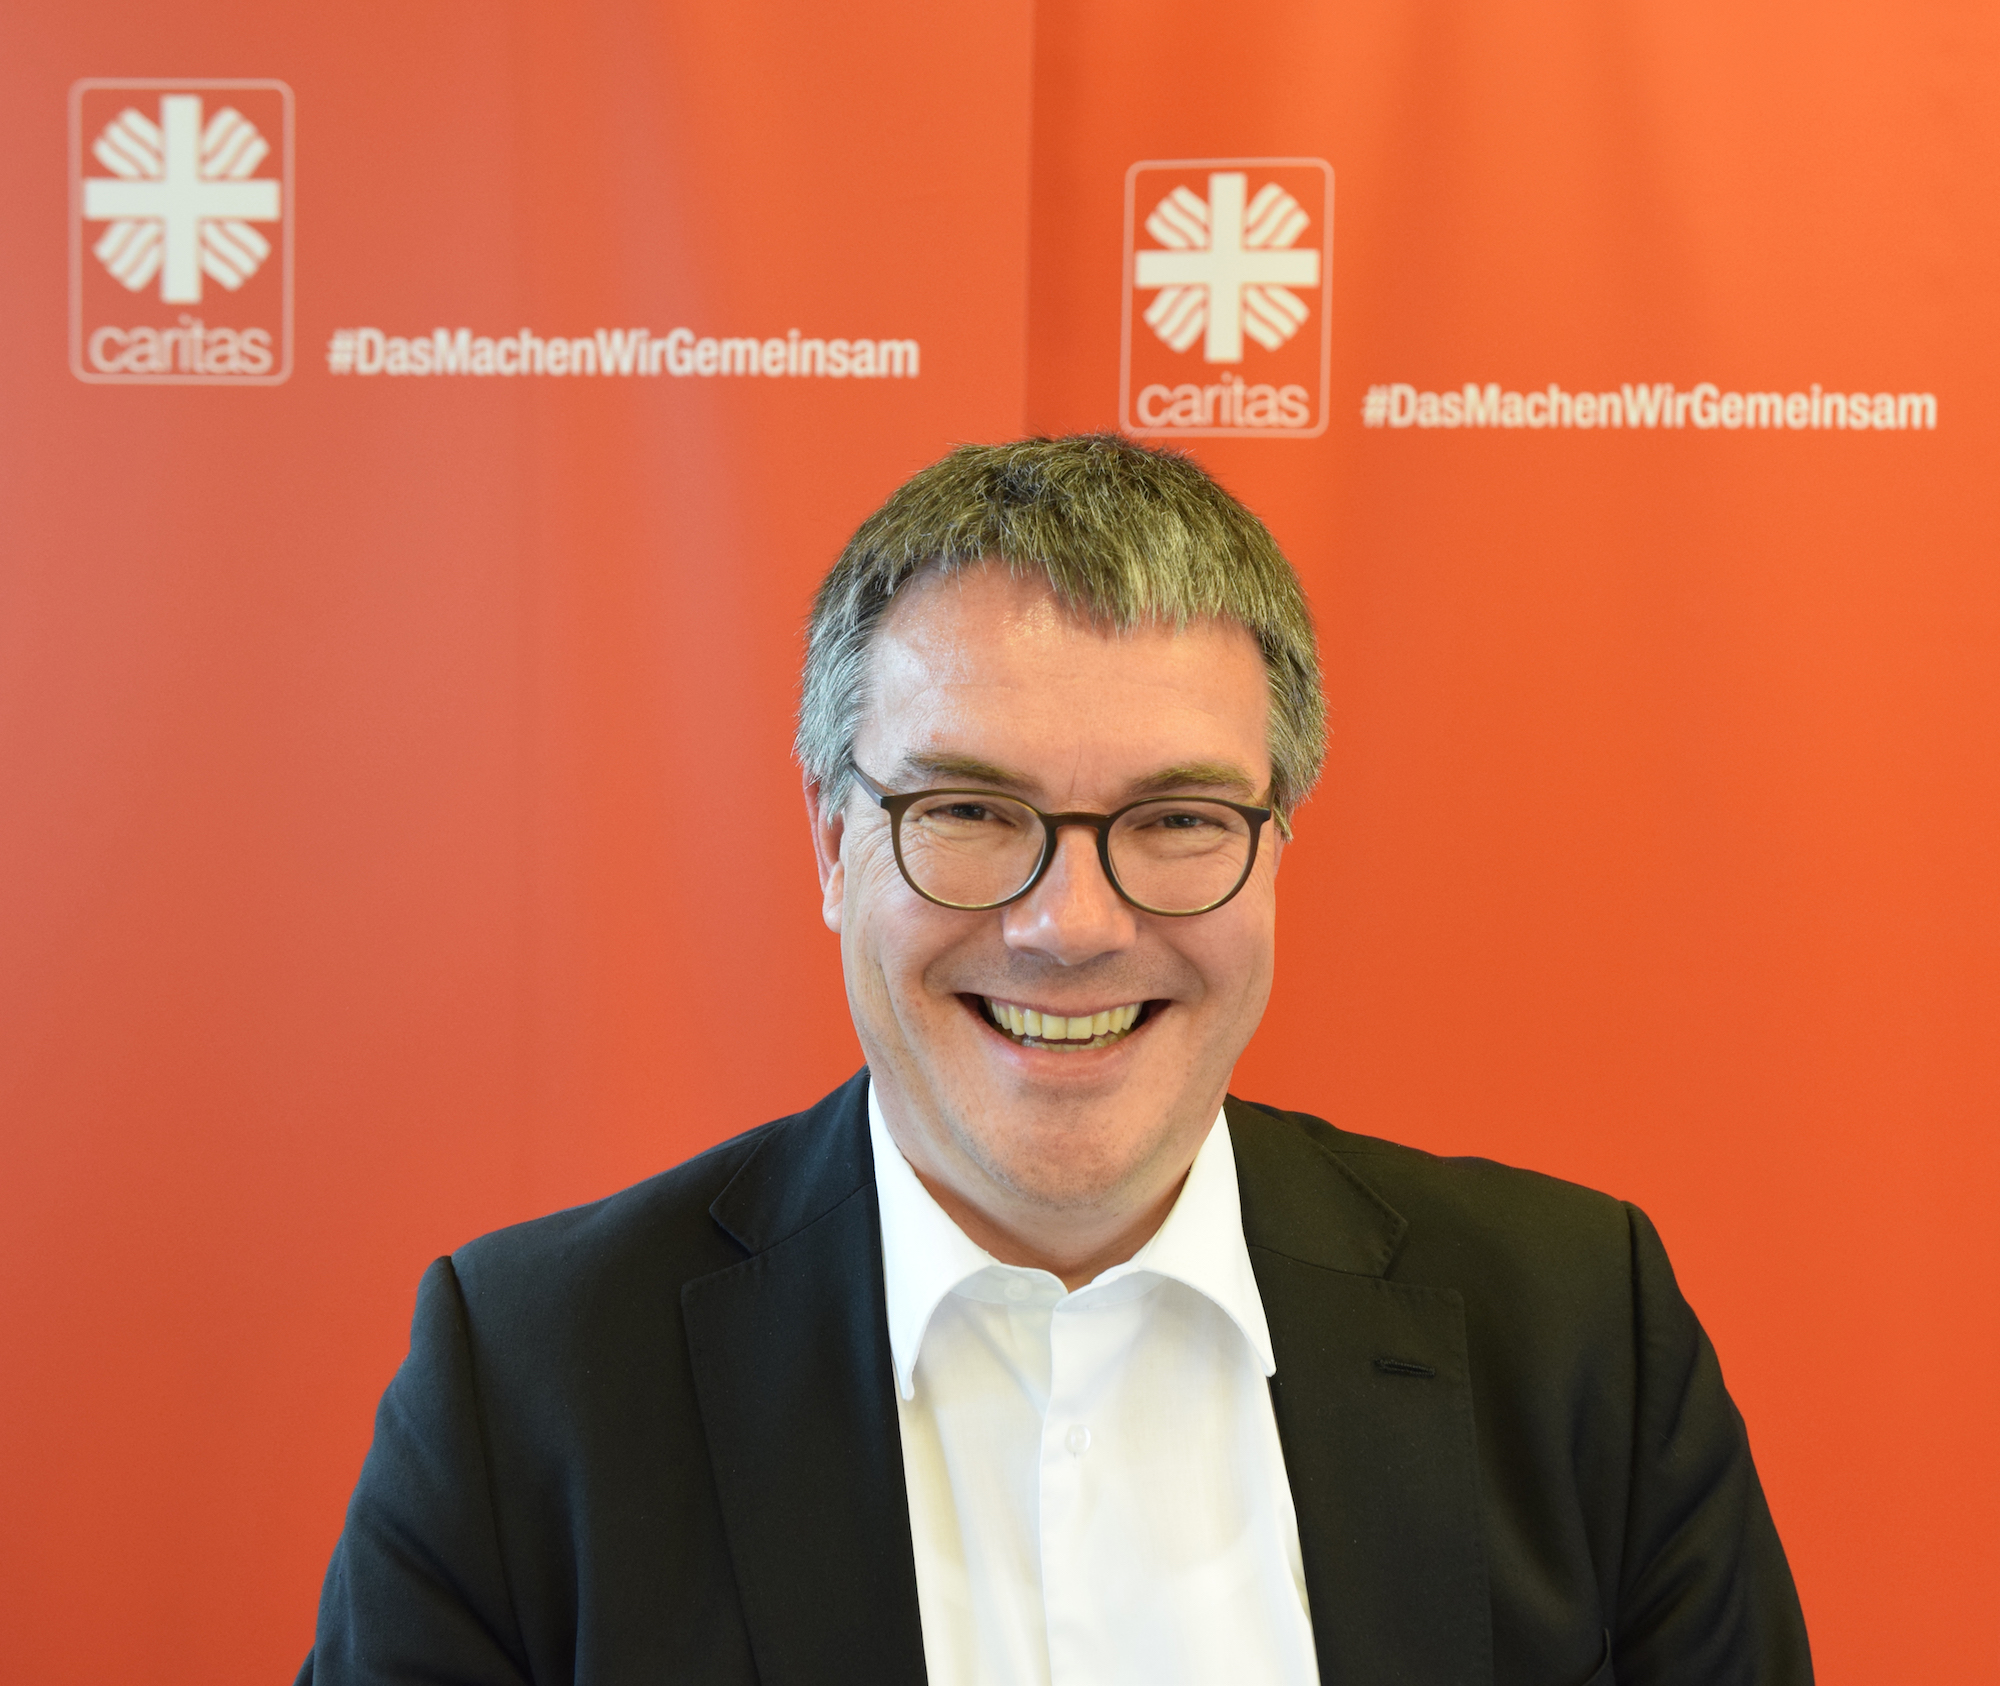 Plädiert für entschlossene Konsequenzen aus den Erfahrungen der Pandemie, um die Zukunftsaufgaben beherzt anzupacken: Stephan Jentgens, seit Januar 2021 Diözesancaritasdirektor in Aachen. (c) Thomas Hohenschue